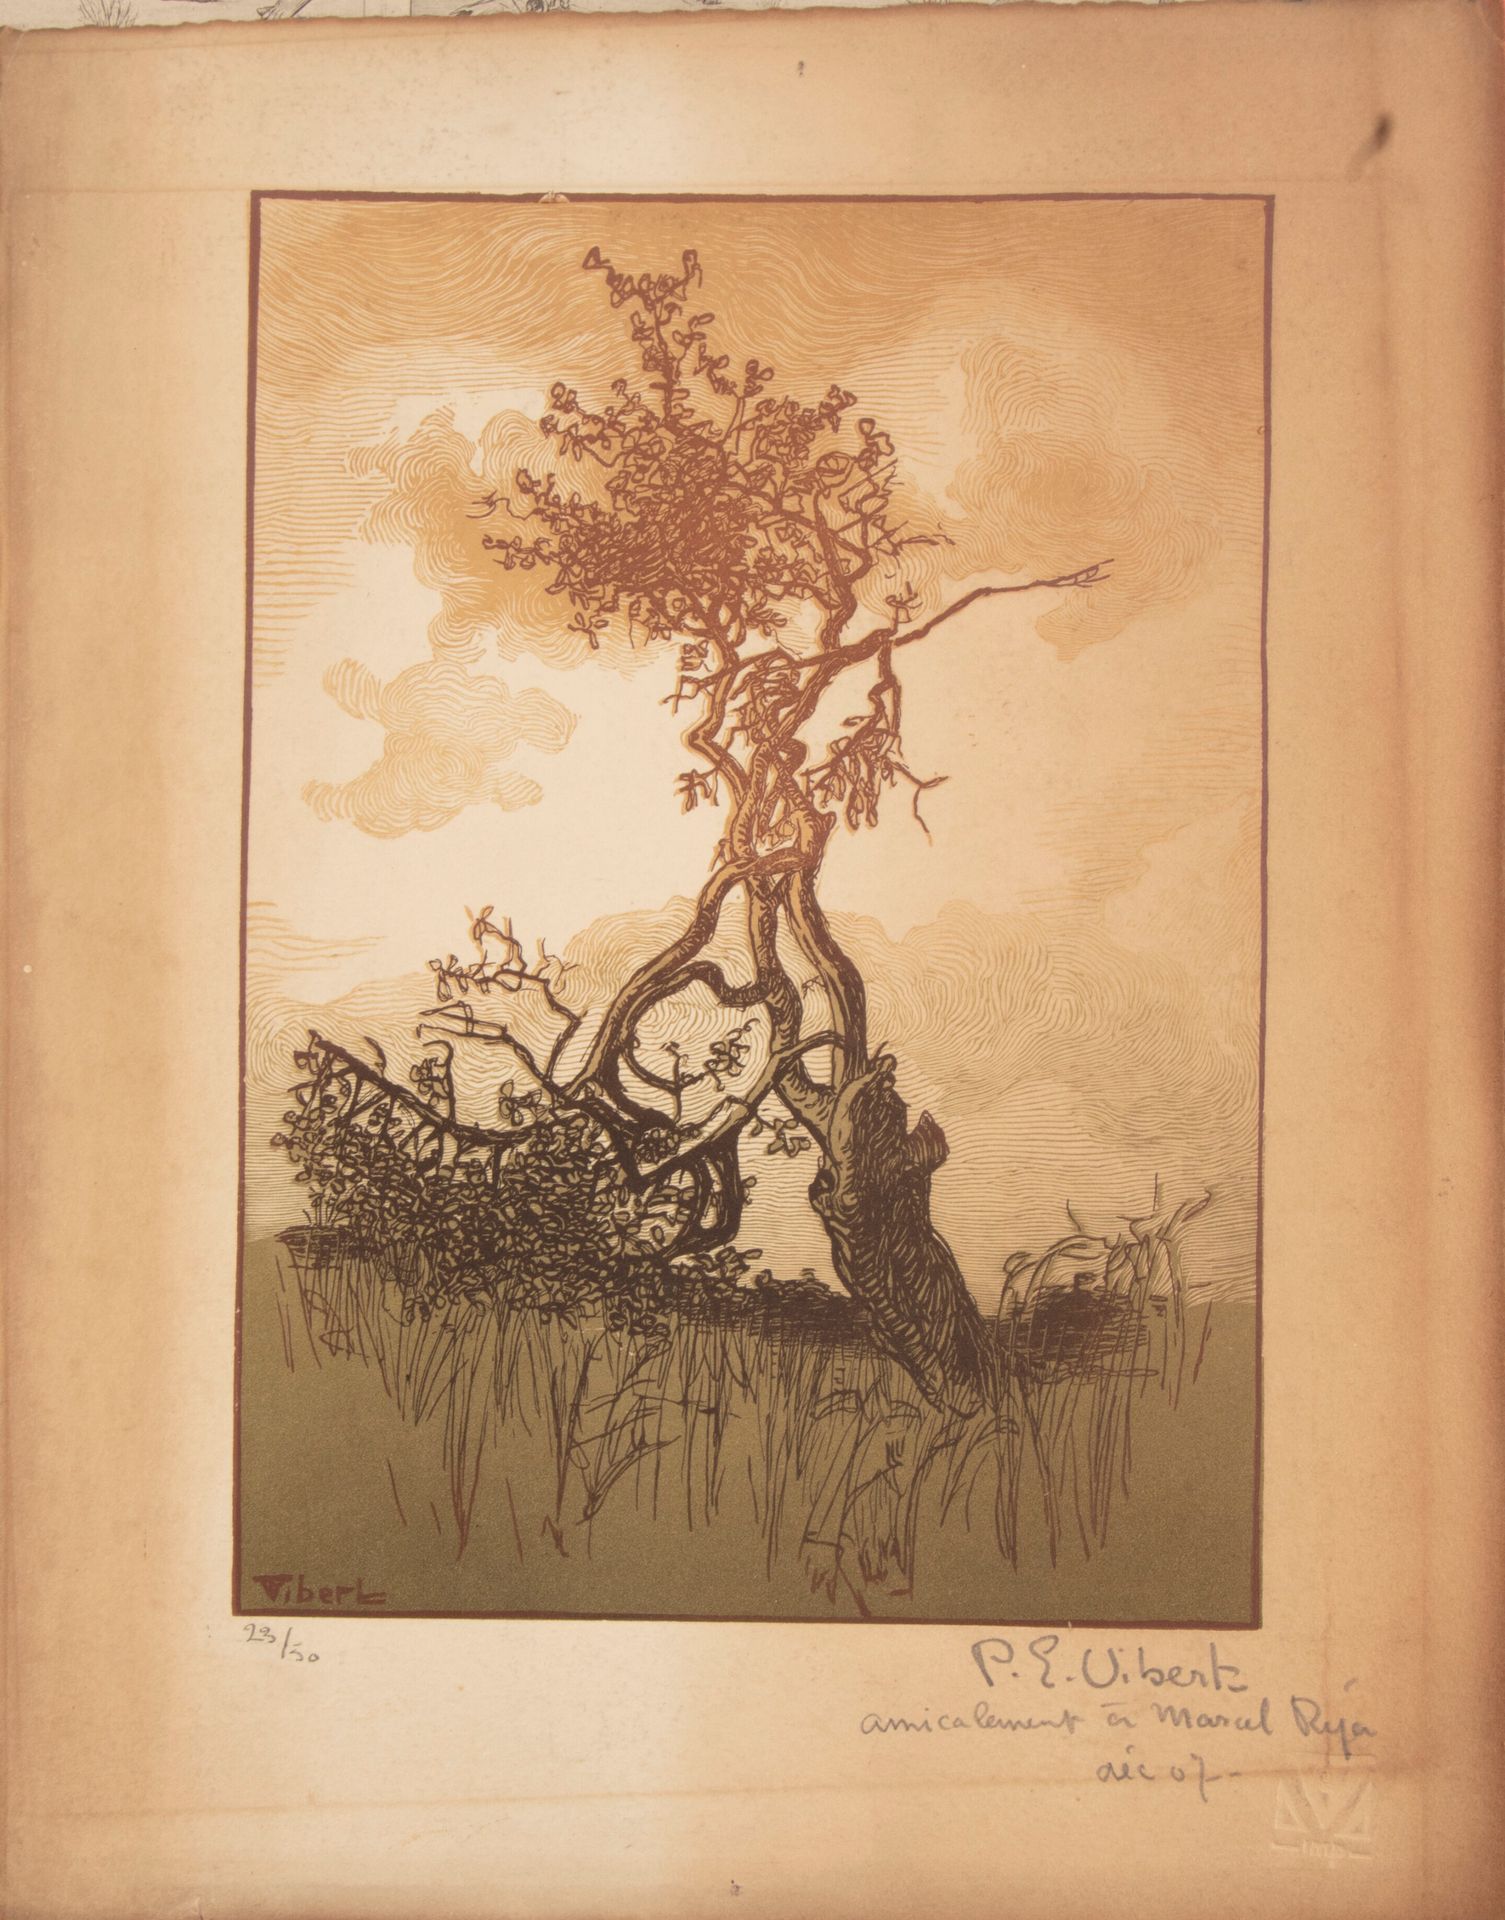 Null 皮埃尔-欧仁-维贝尔 (1875-1937)

树木

雕刻，会签，编号为23/50

献给 "友好的马塞尔-雷亚，07年12月

37厘米 x 27&hellip;